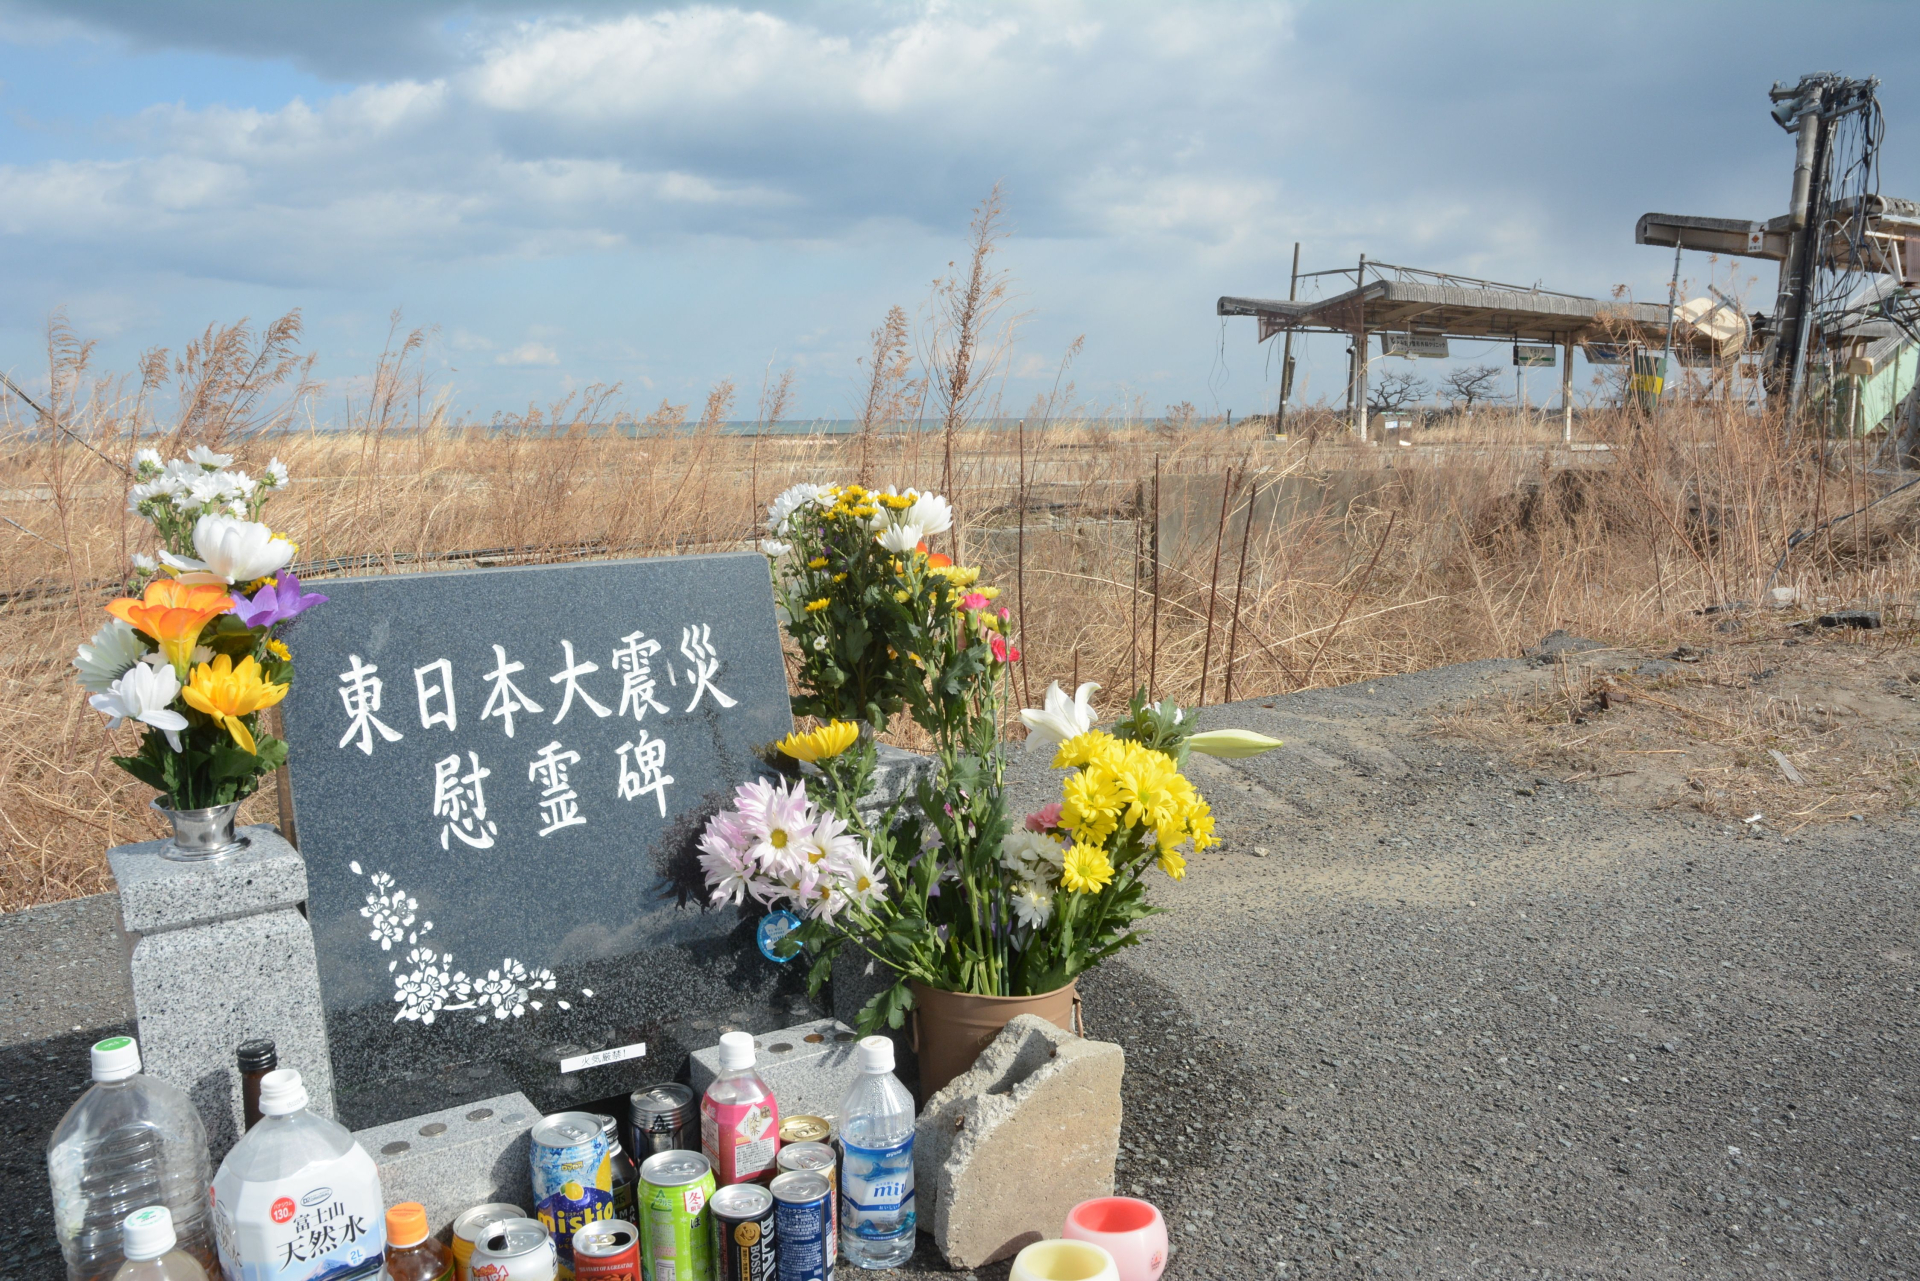 13 години след ужаса във Фукушима 2520 души...